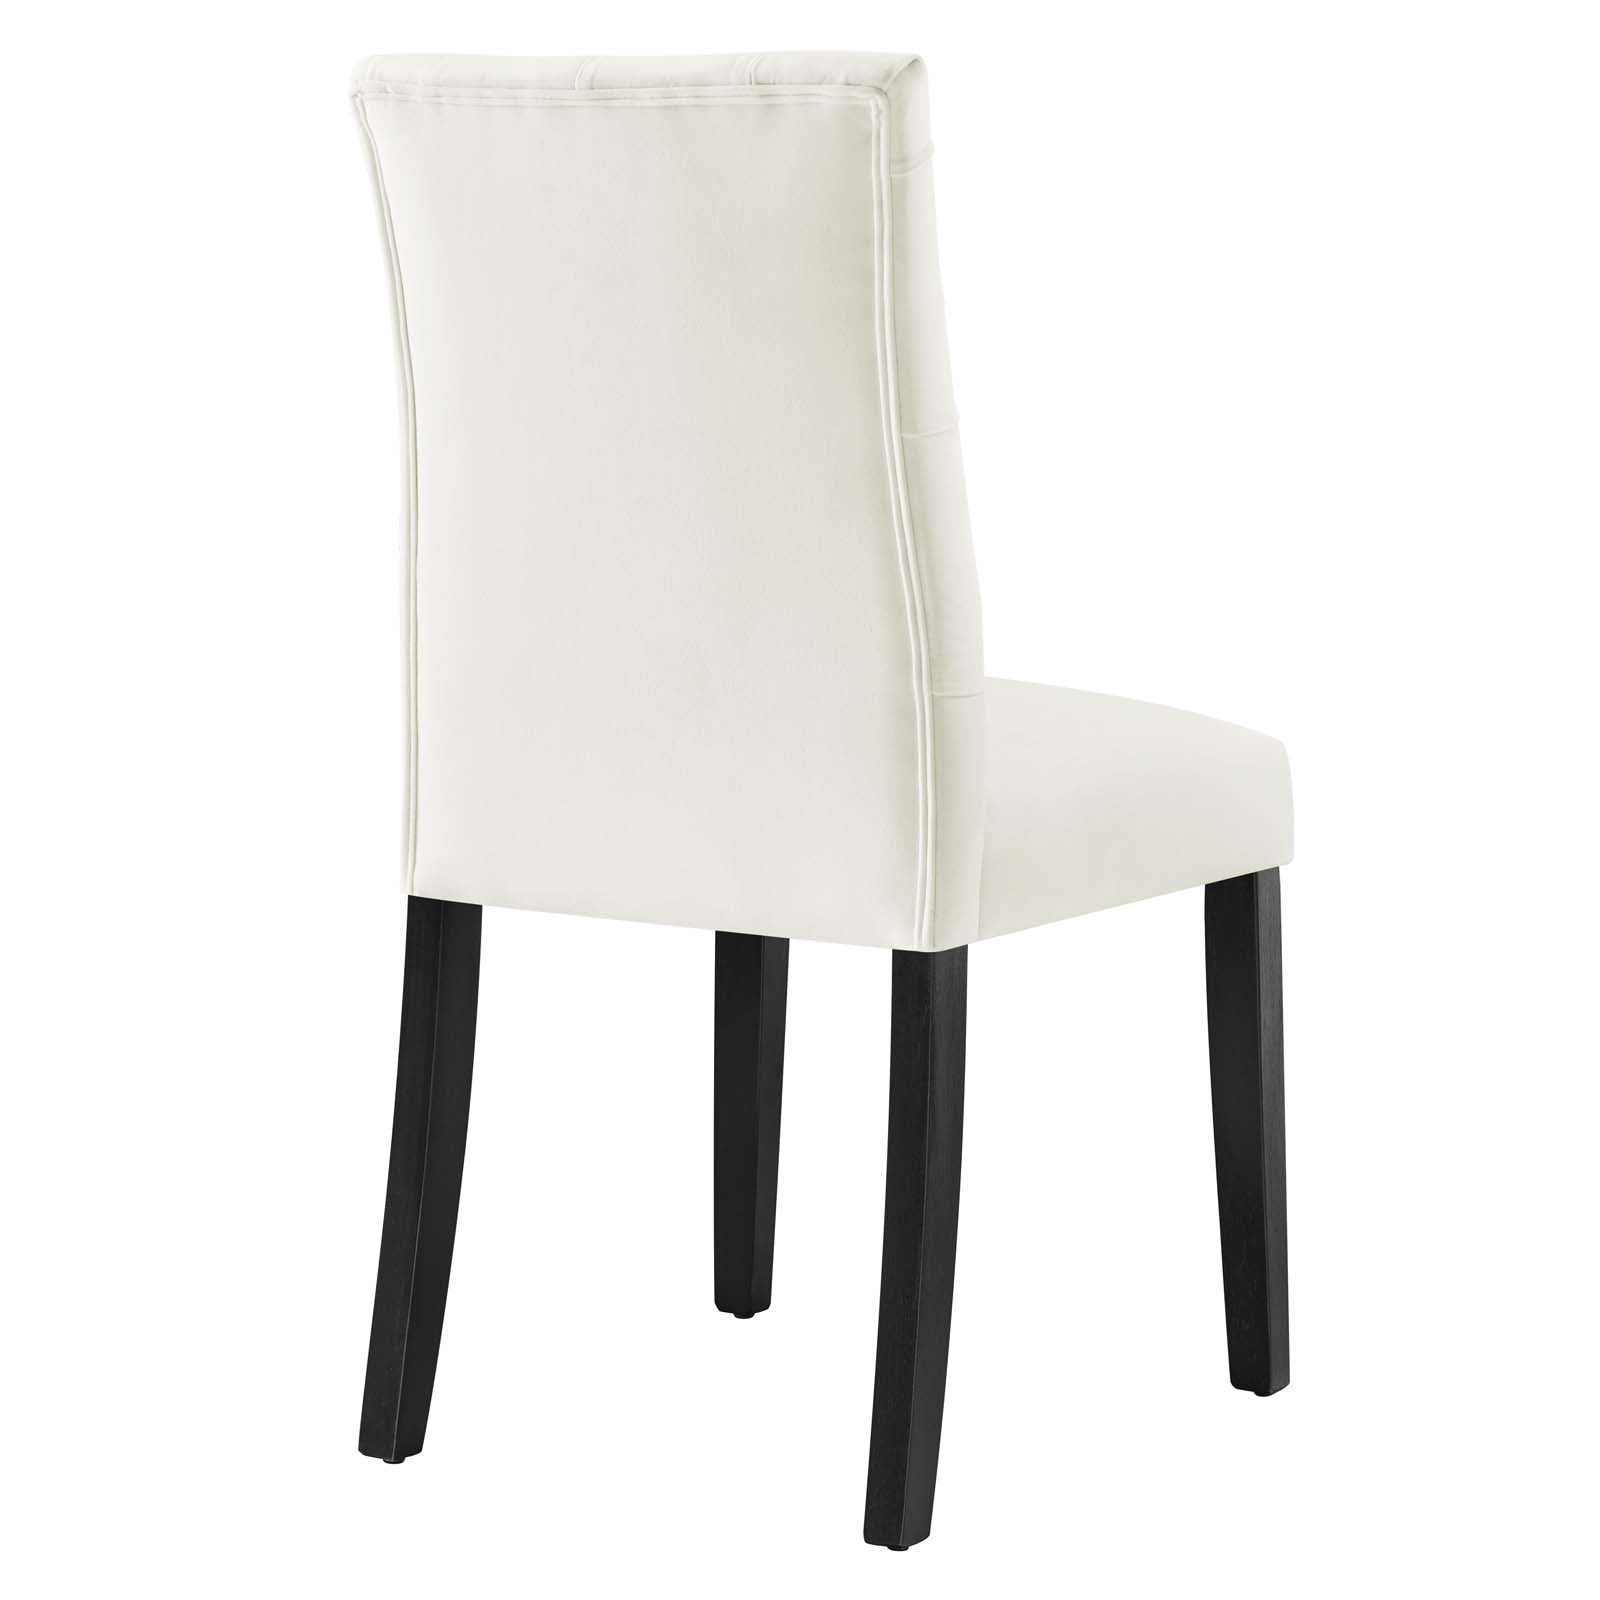 Duchess Performance Velvet Dining Chairs - Set of 2 - East Shore Modern Home Furnishings